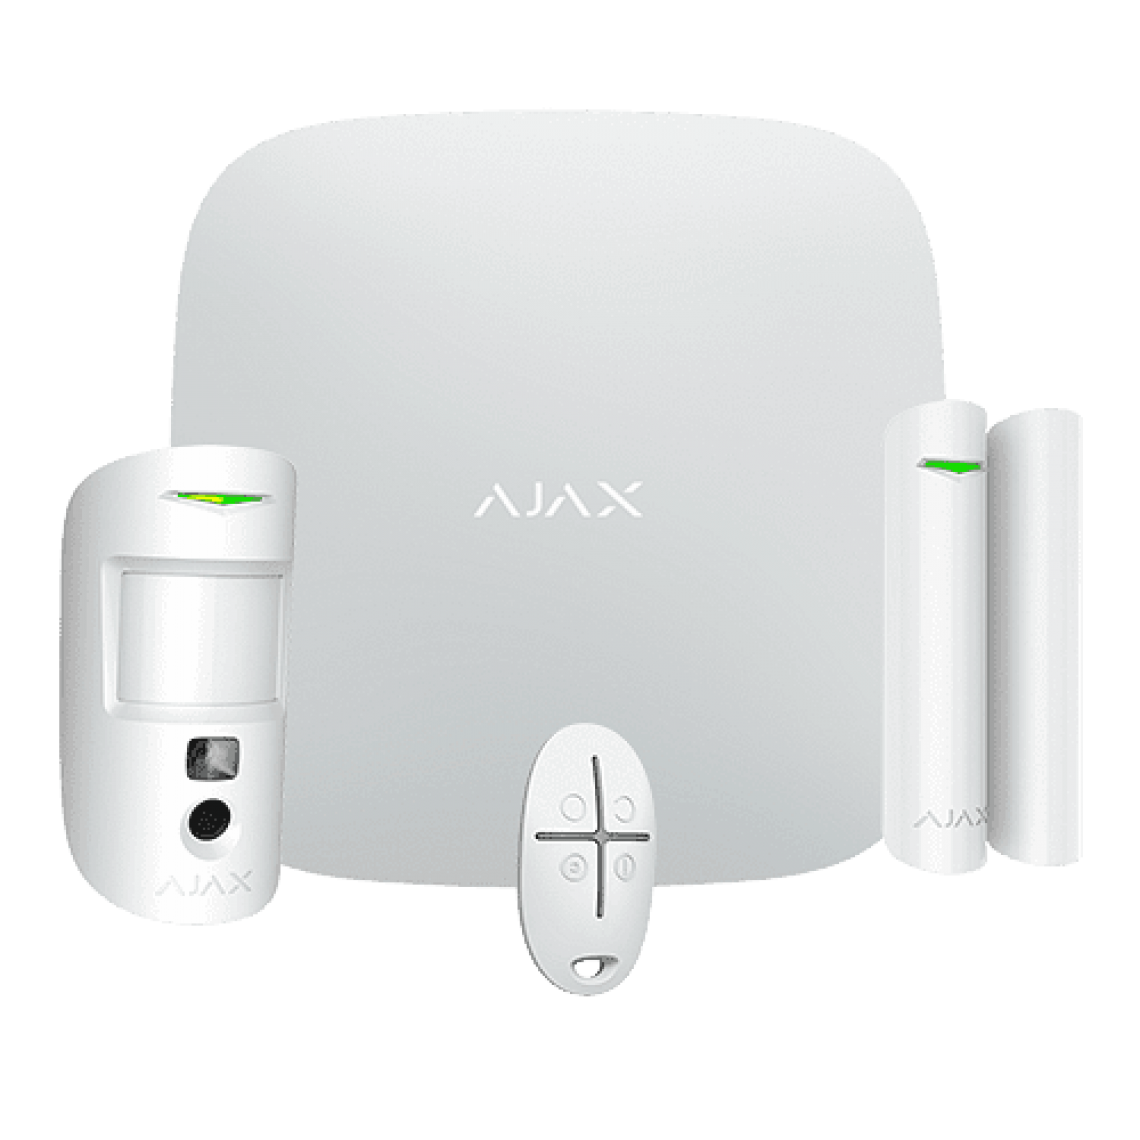 Ajax Systems - Kit d'alarme professionnel avec caméra, détecteur et télécommande blanc - Ajax Systems - Alarme connectée